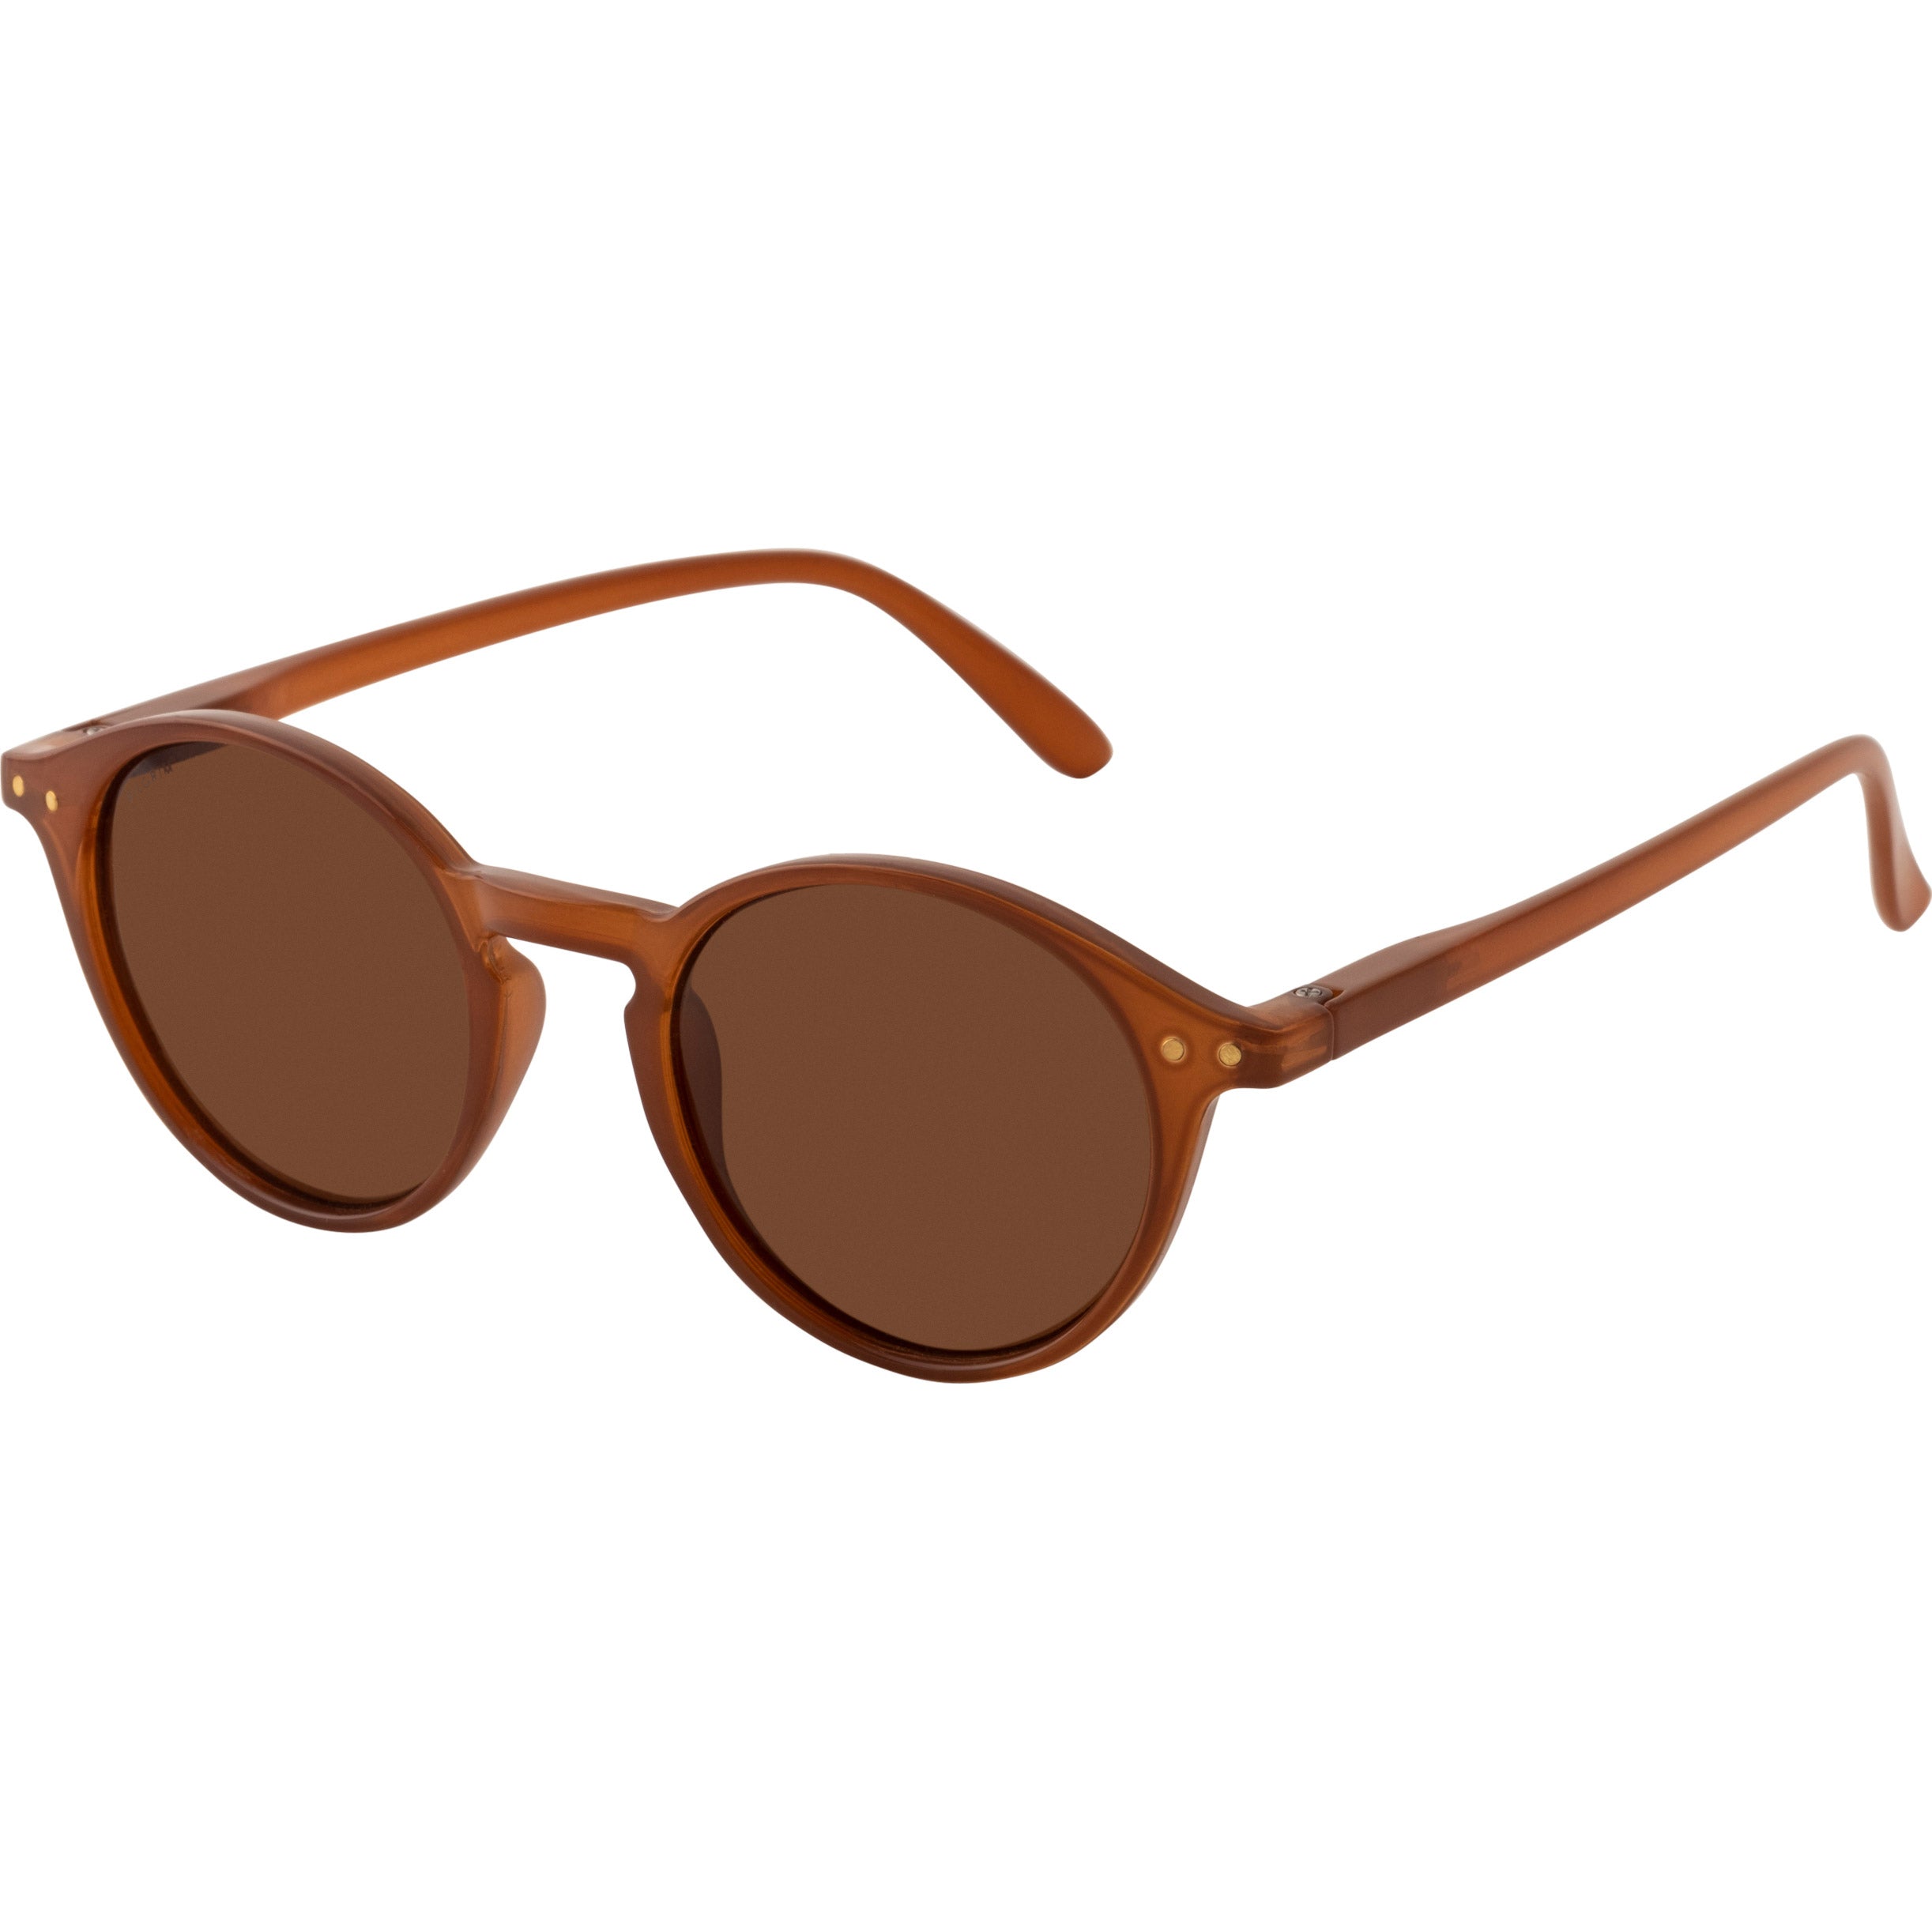 Pilgrim ROXANNE klassiske runde solbriller, brun